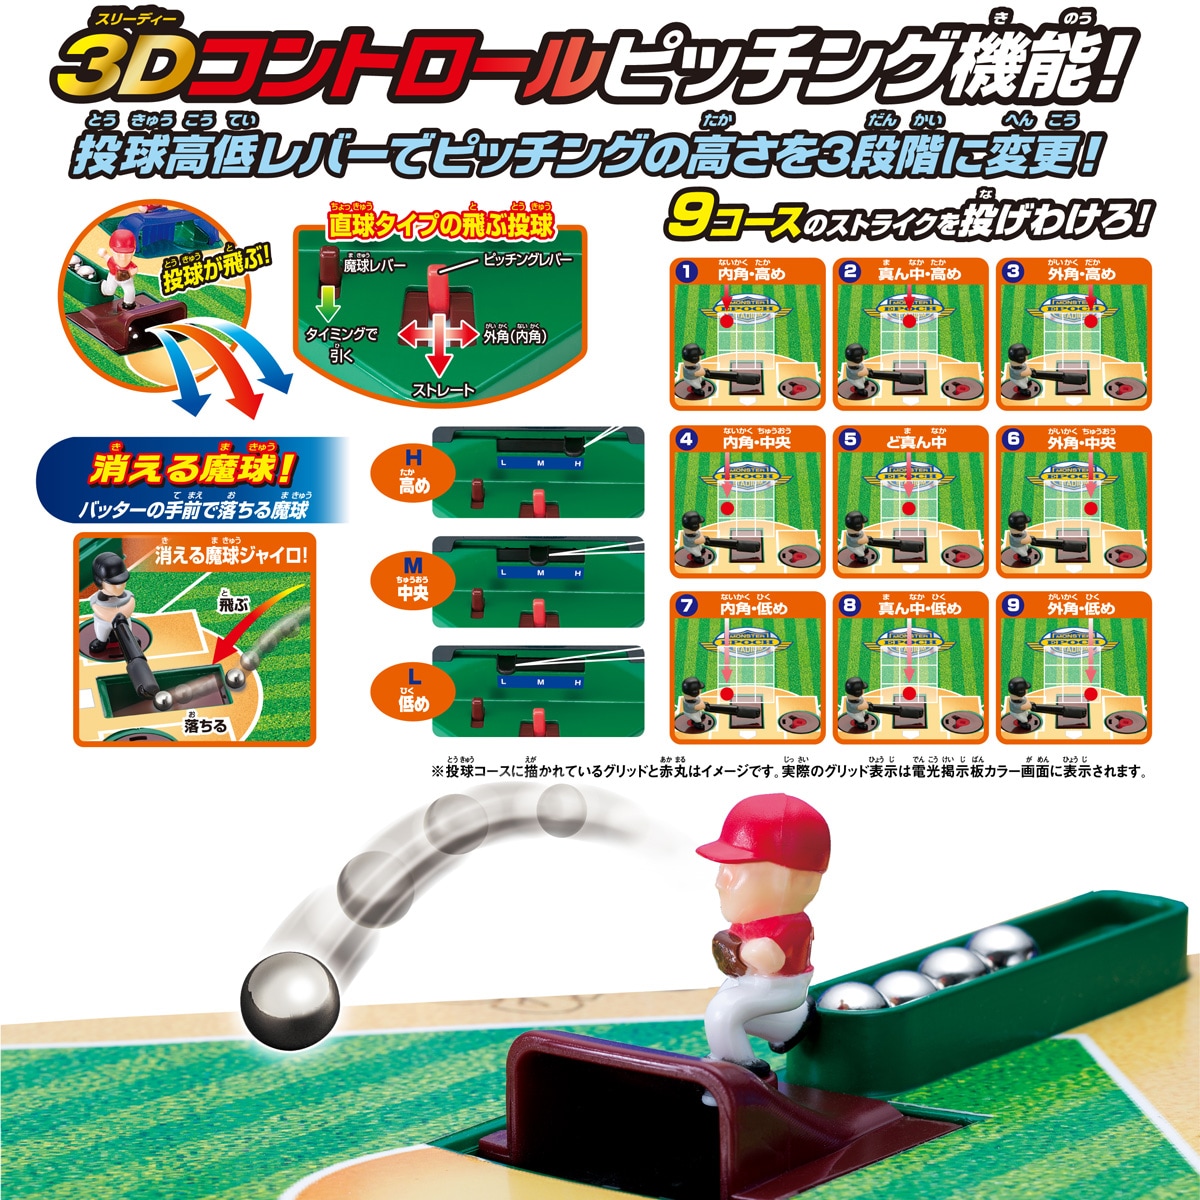 野球盤3Dエース モンスターコントロール｜商品カタログ｜エポック社の 